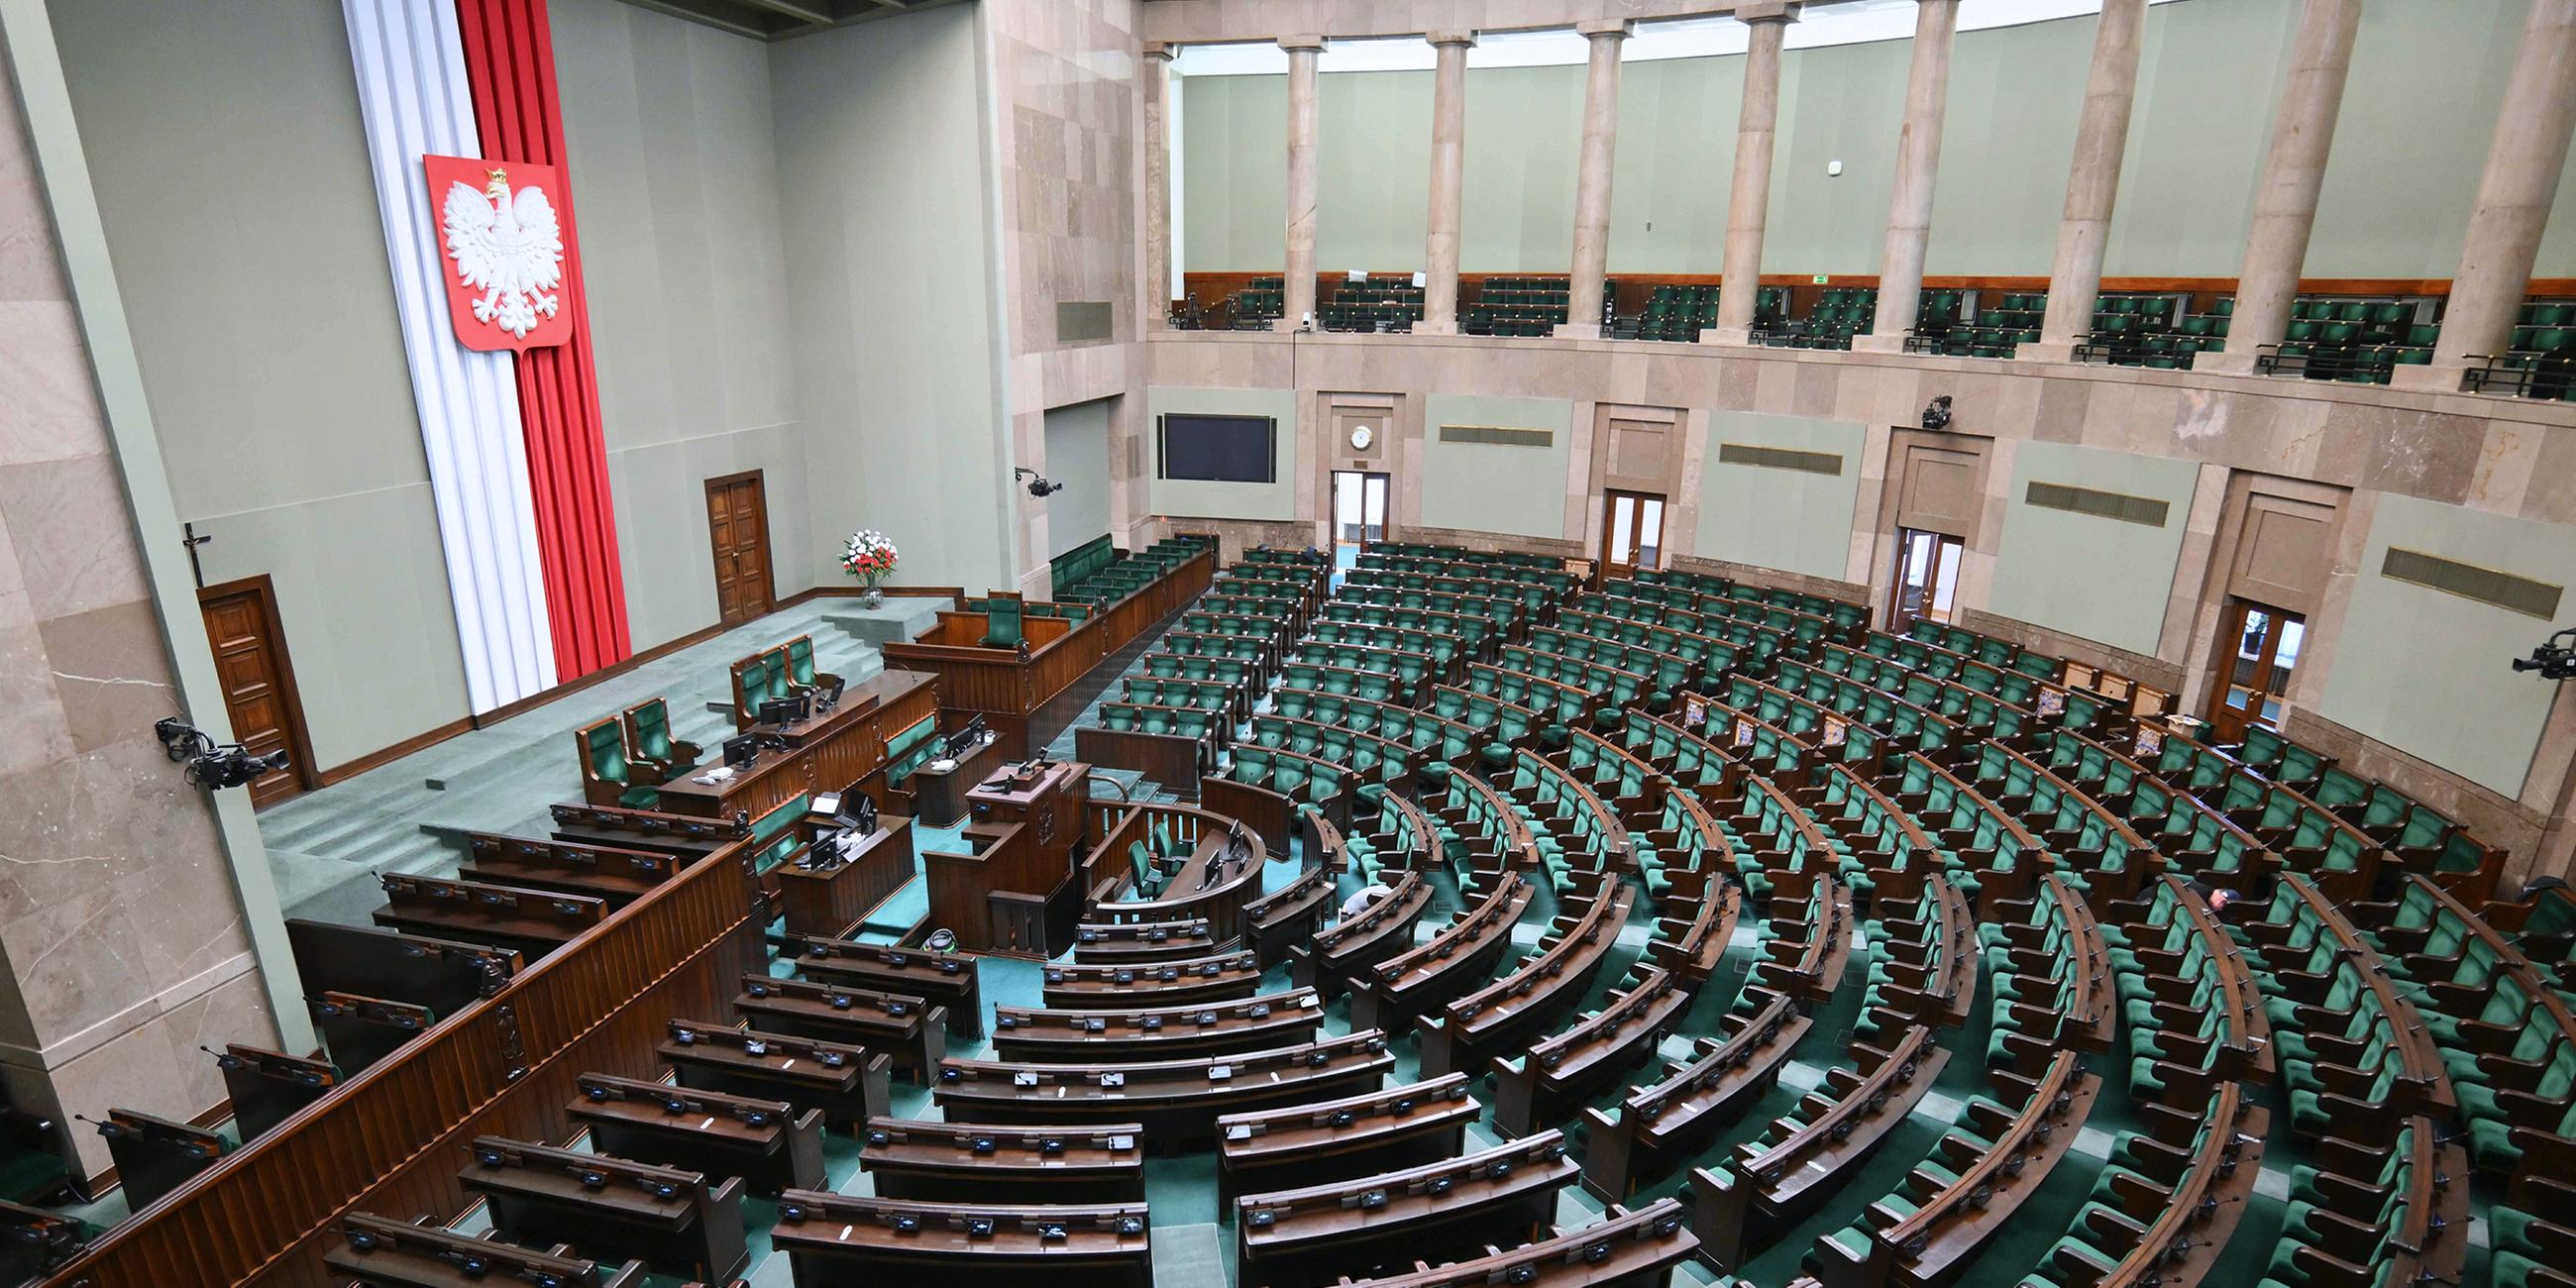 Polnisches Parlament nach der Renovierung